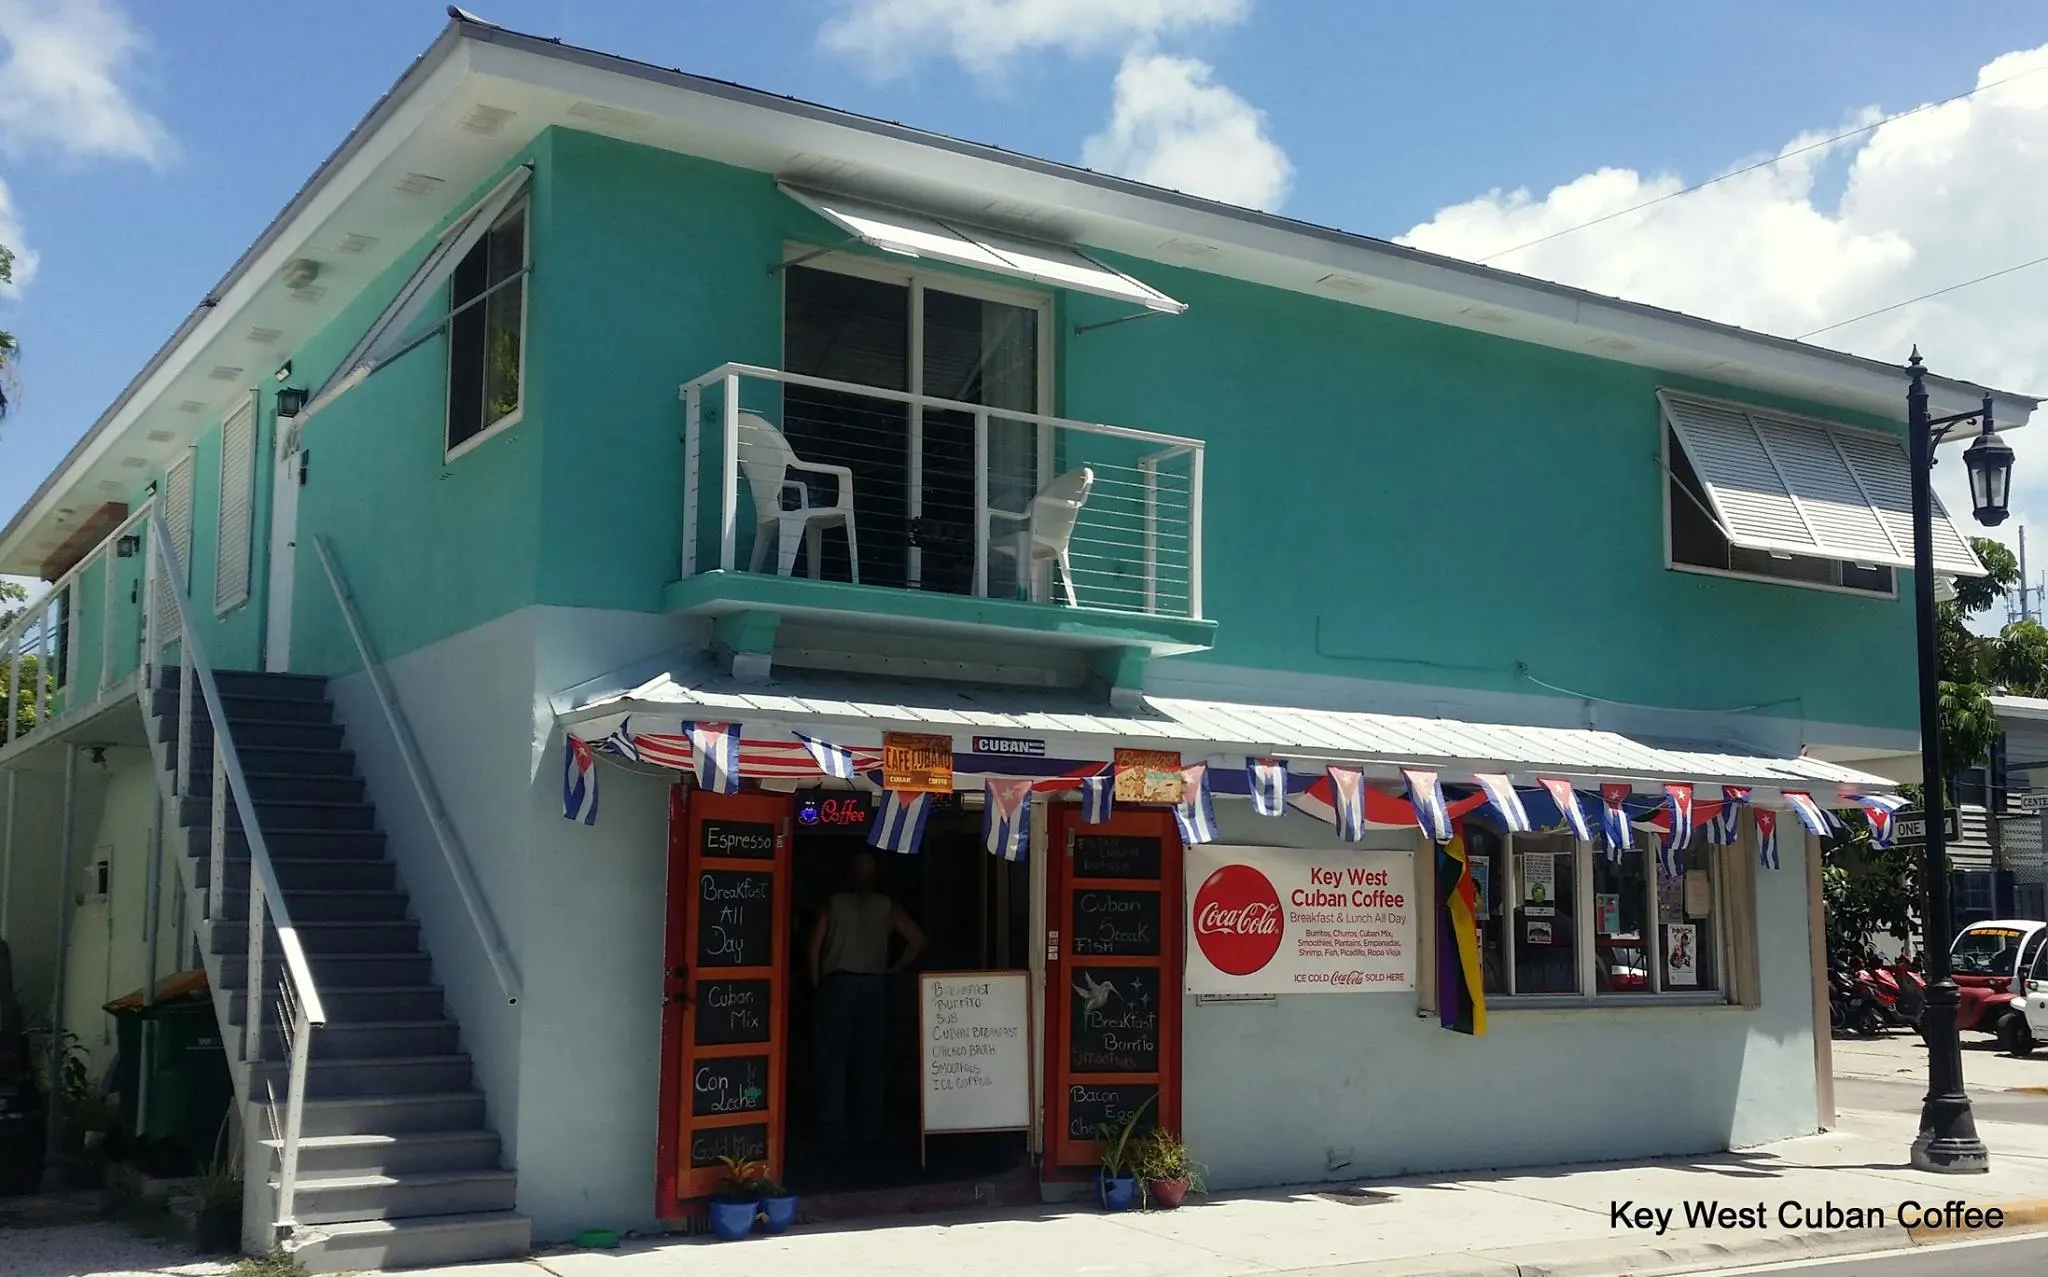 Key West Cuban Coffee Shop